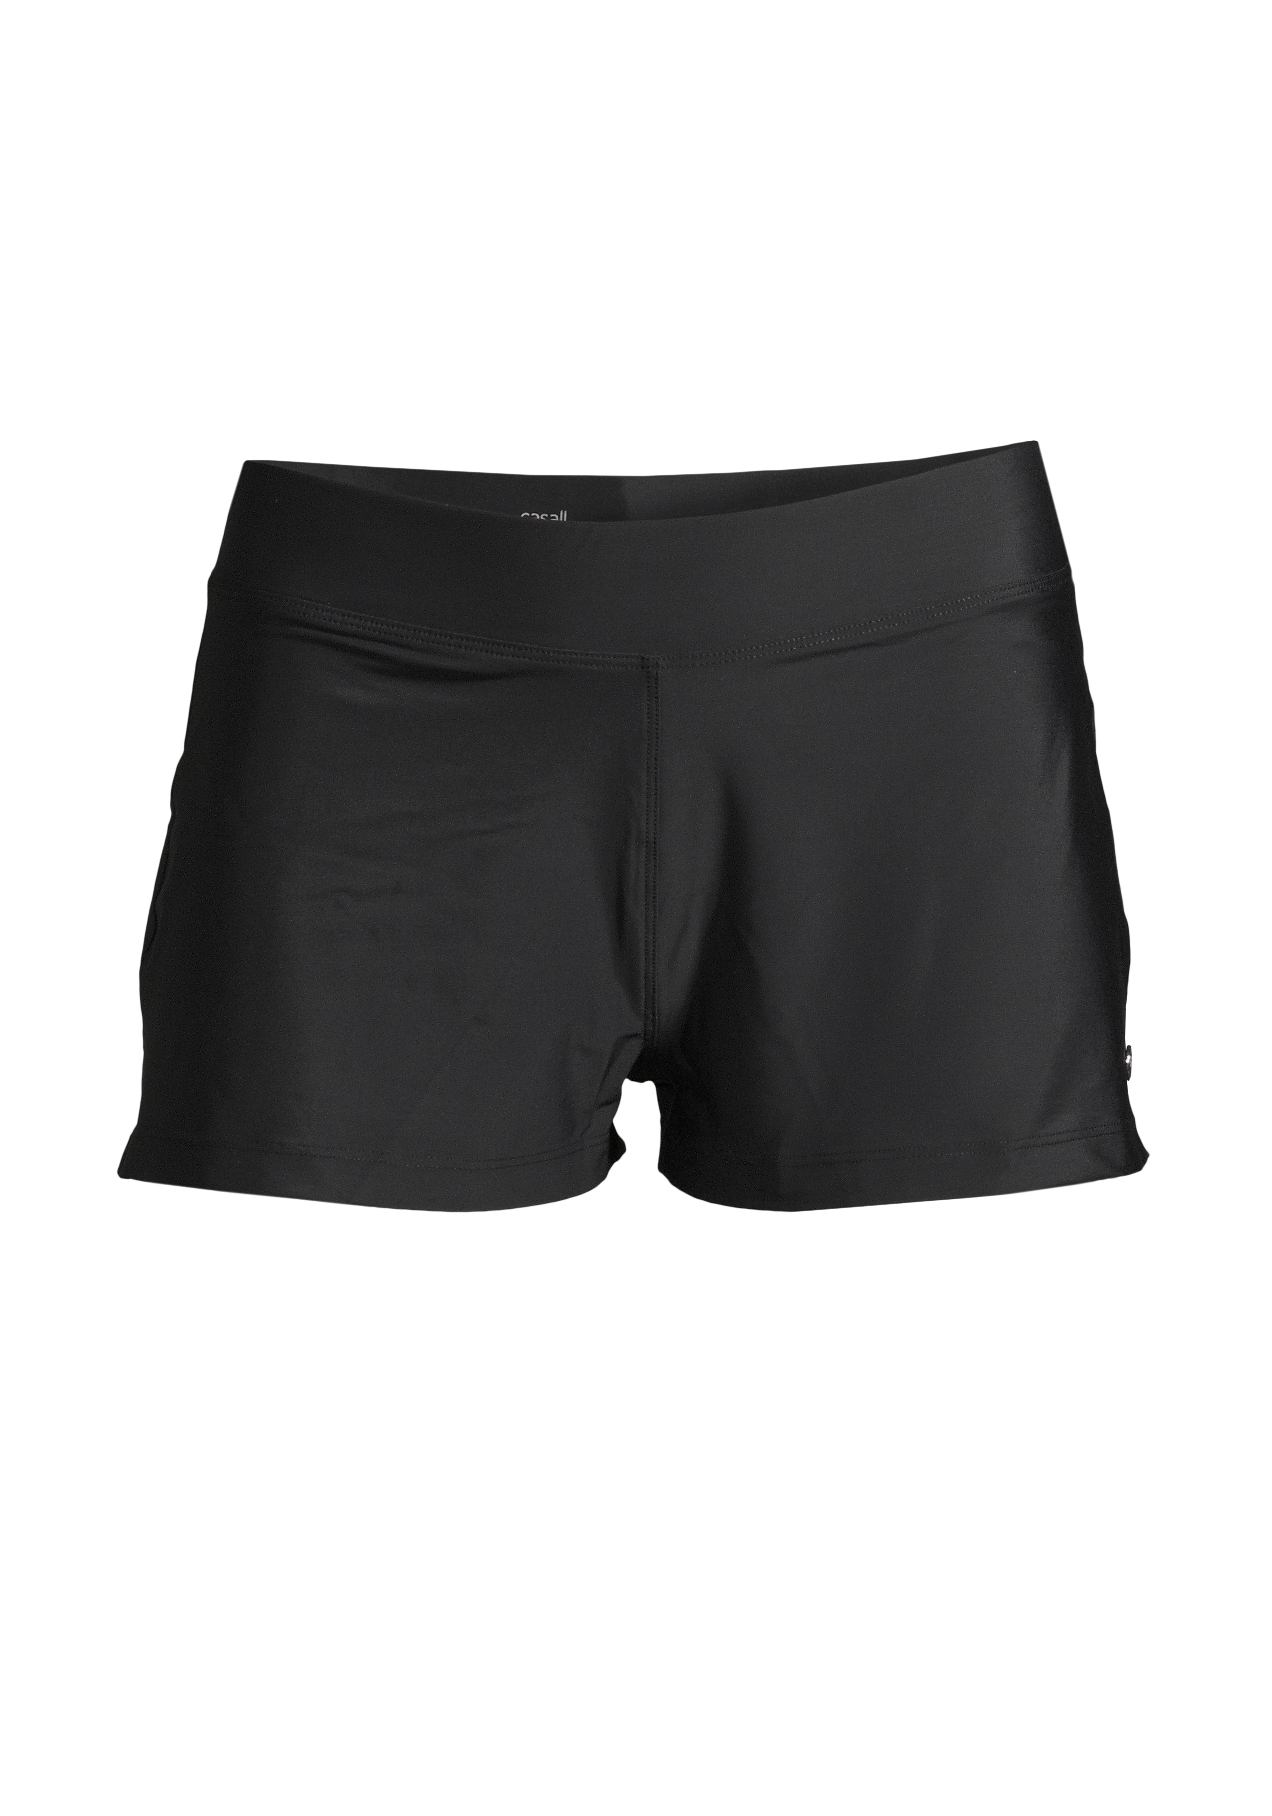 Summer Shorts - Black